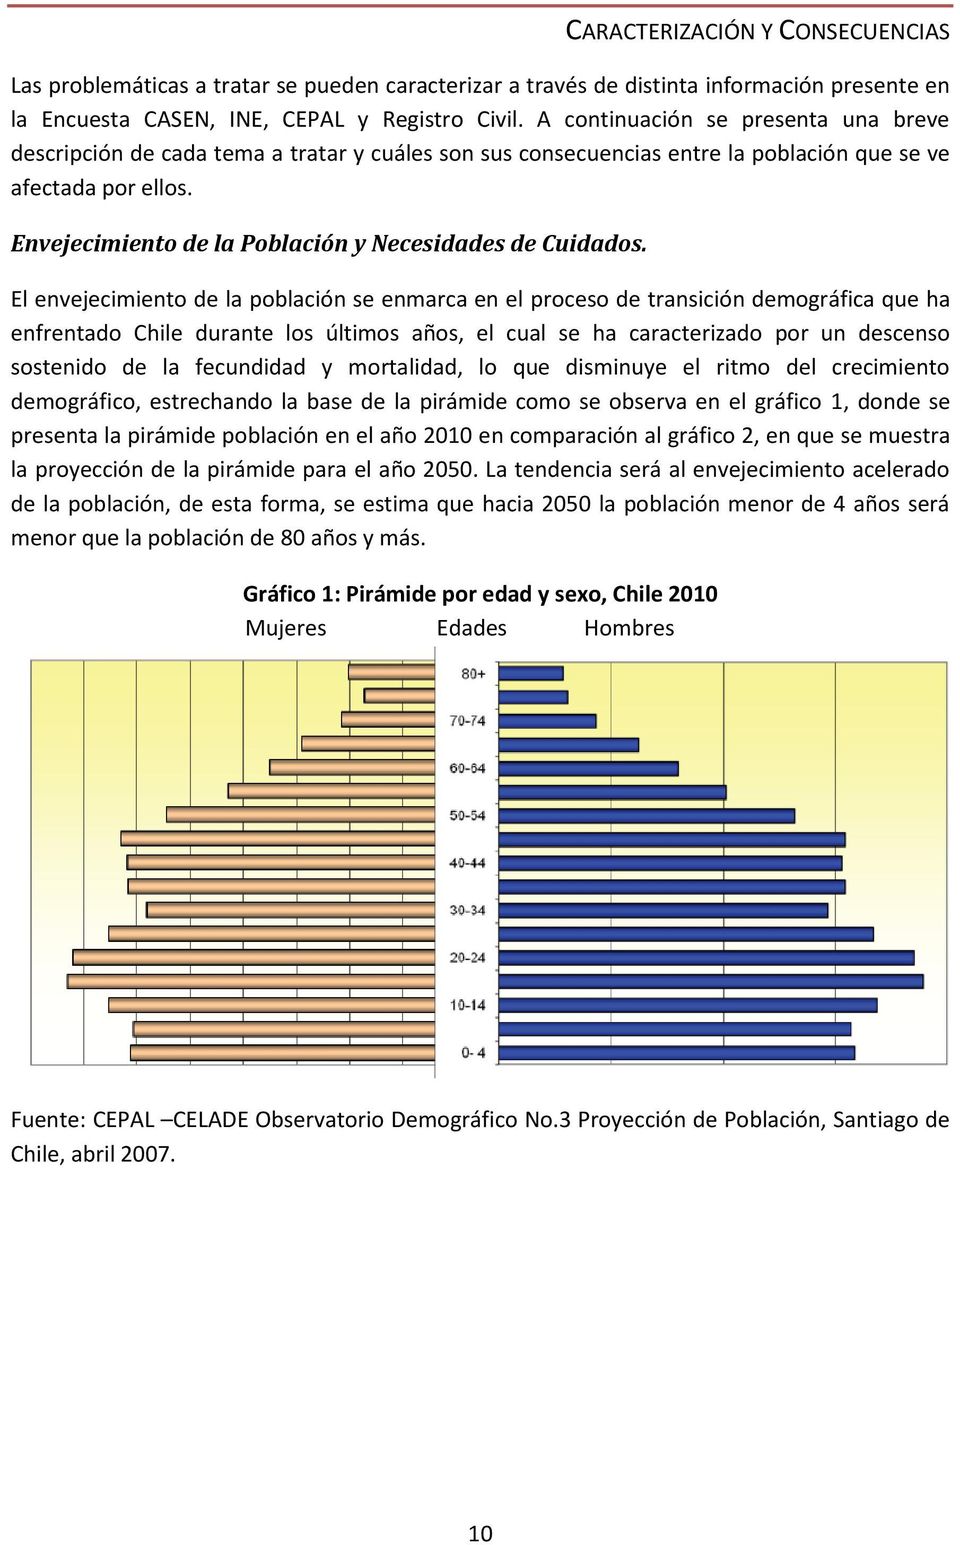 Envejecimiento de la Población y Necesidades de Cuidados.